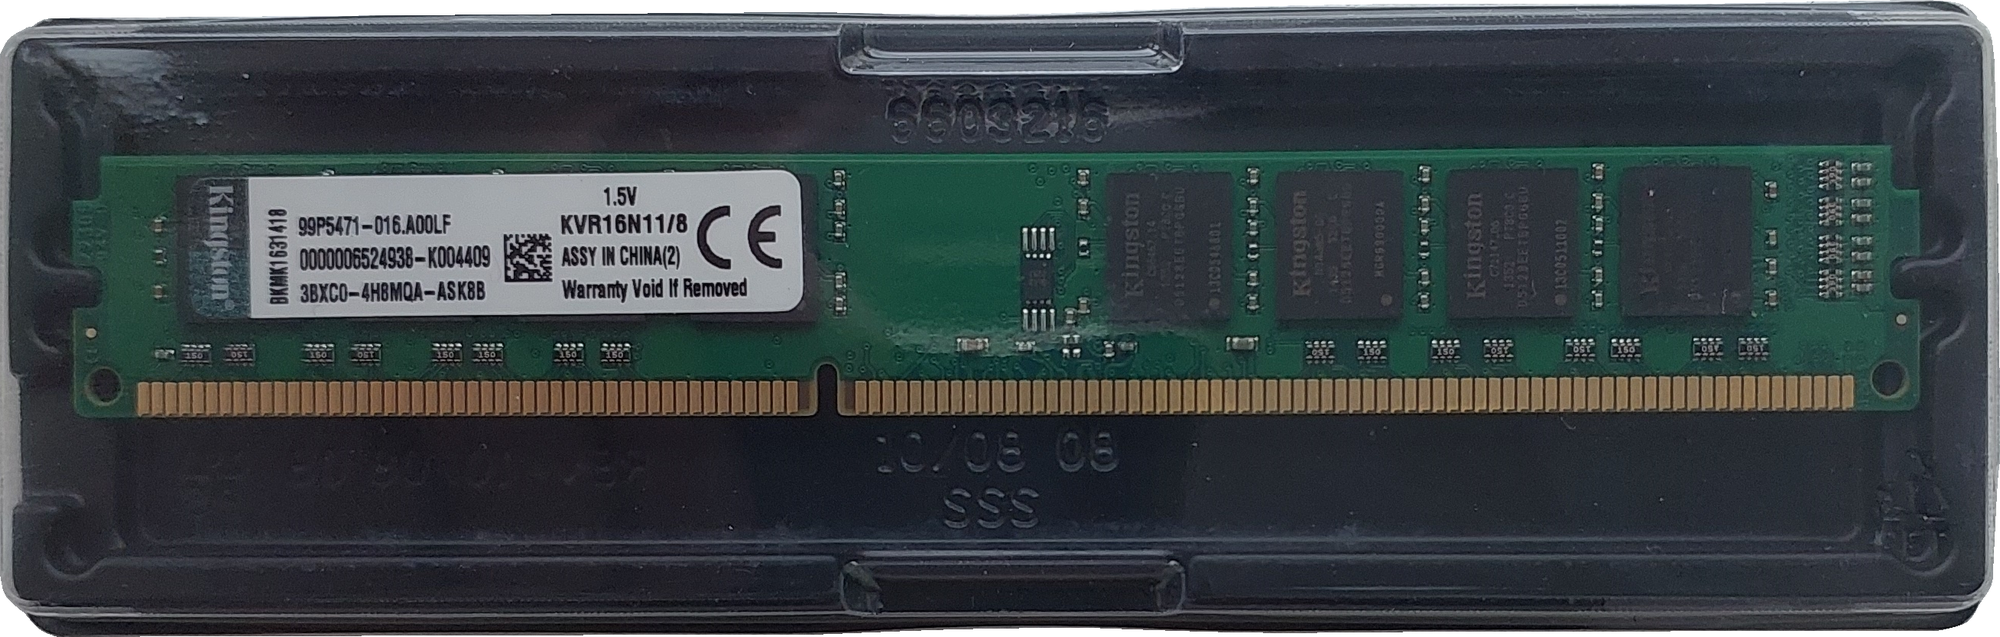 Оперативная память Kingston ValueRAM 8 ГБ DDR3 1600 МГц DIMM CL11 KVR16N11/8